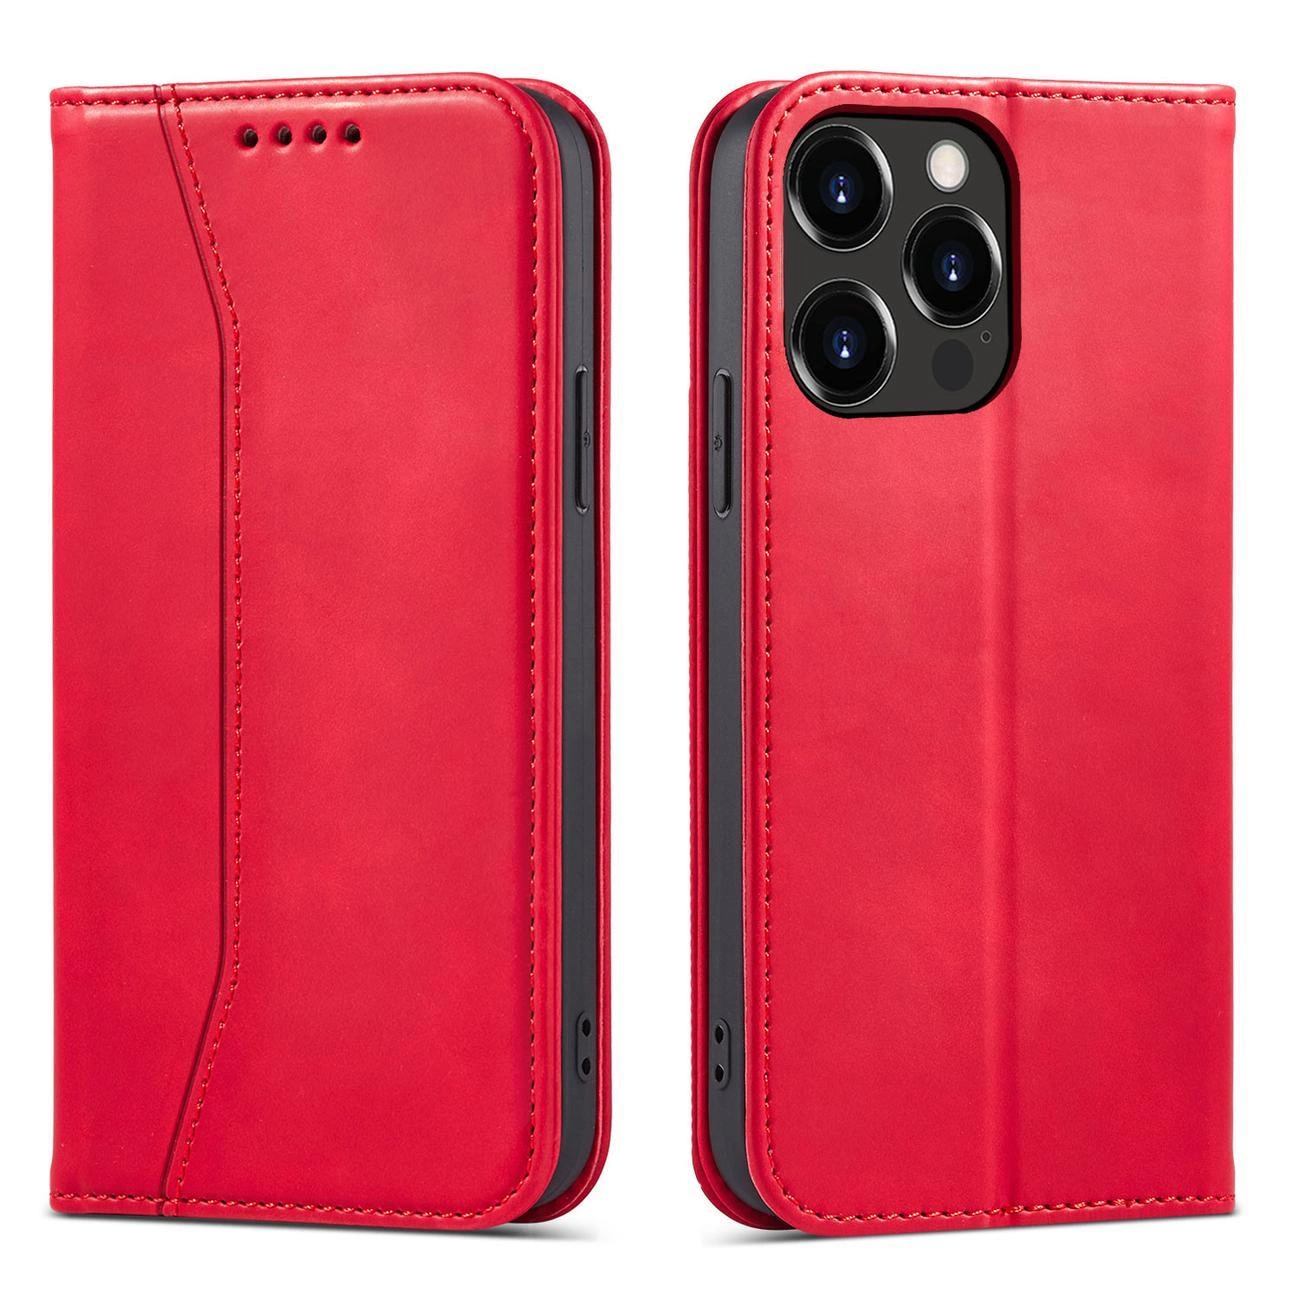 Hurtel Magnet Fancy Case iPhone 14 Pro Max pouzdro s klopou peněženky stojánek červený